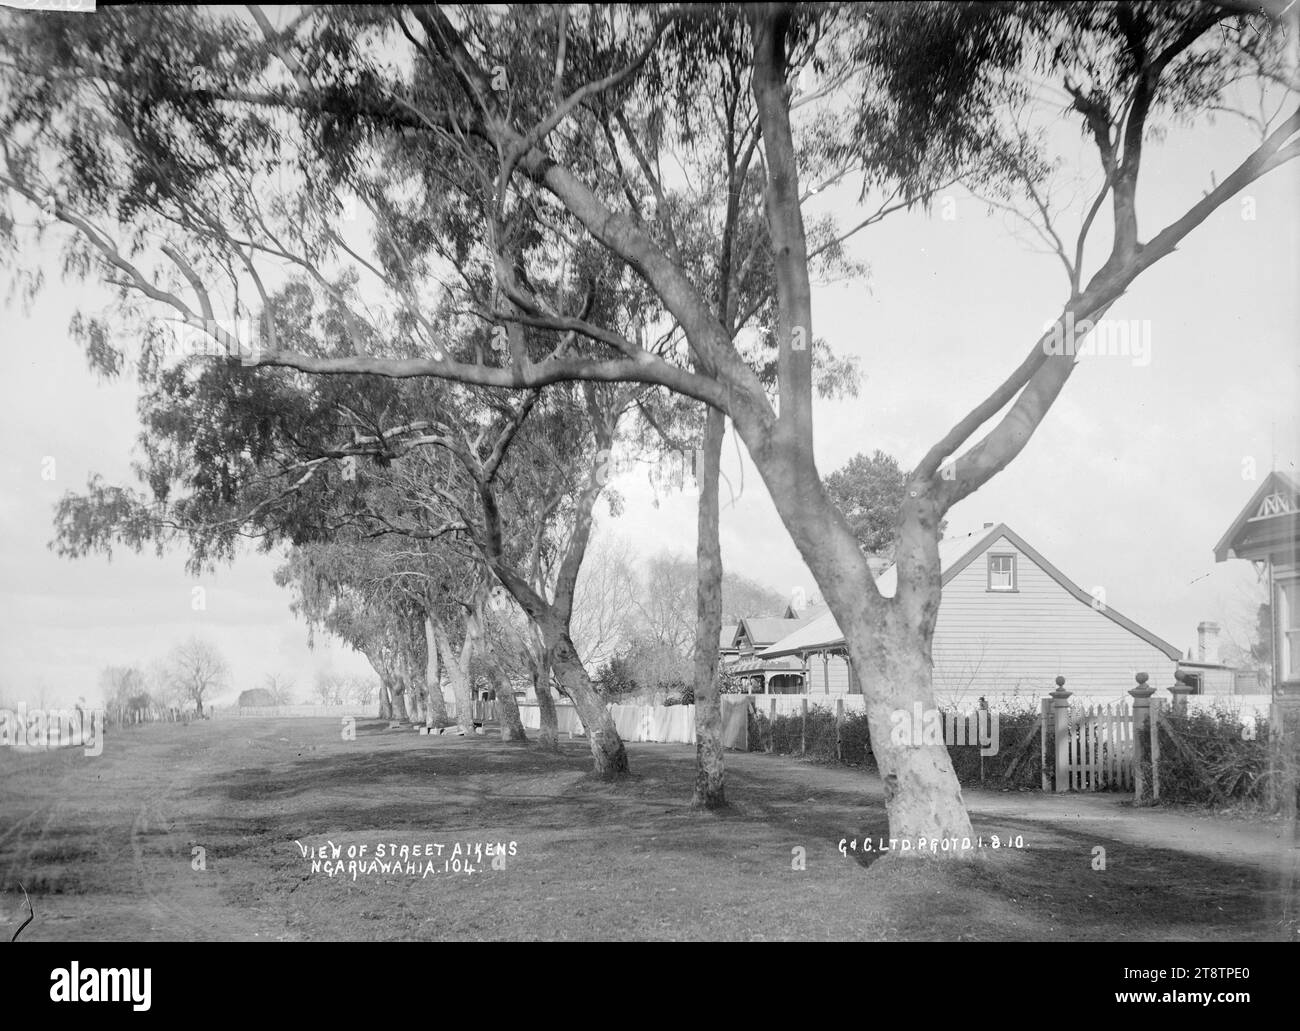 Aikens Street, Ngaruawahia, Nouvelle-Zélande, 1910 -, Aikens Street, Ngaruawahia, Nouvelle-Zélande. Il y a une rangée de gommiers matures devant les maisons sur le côté droit de la route. (Probablement Green & Colebrook, marchands, avec une succursale à Ngaruawahia, en Nouvelle-Zélande Banque D'Images